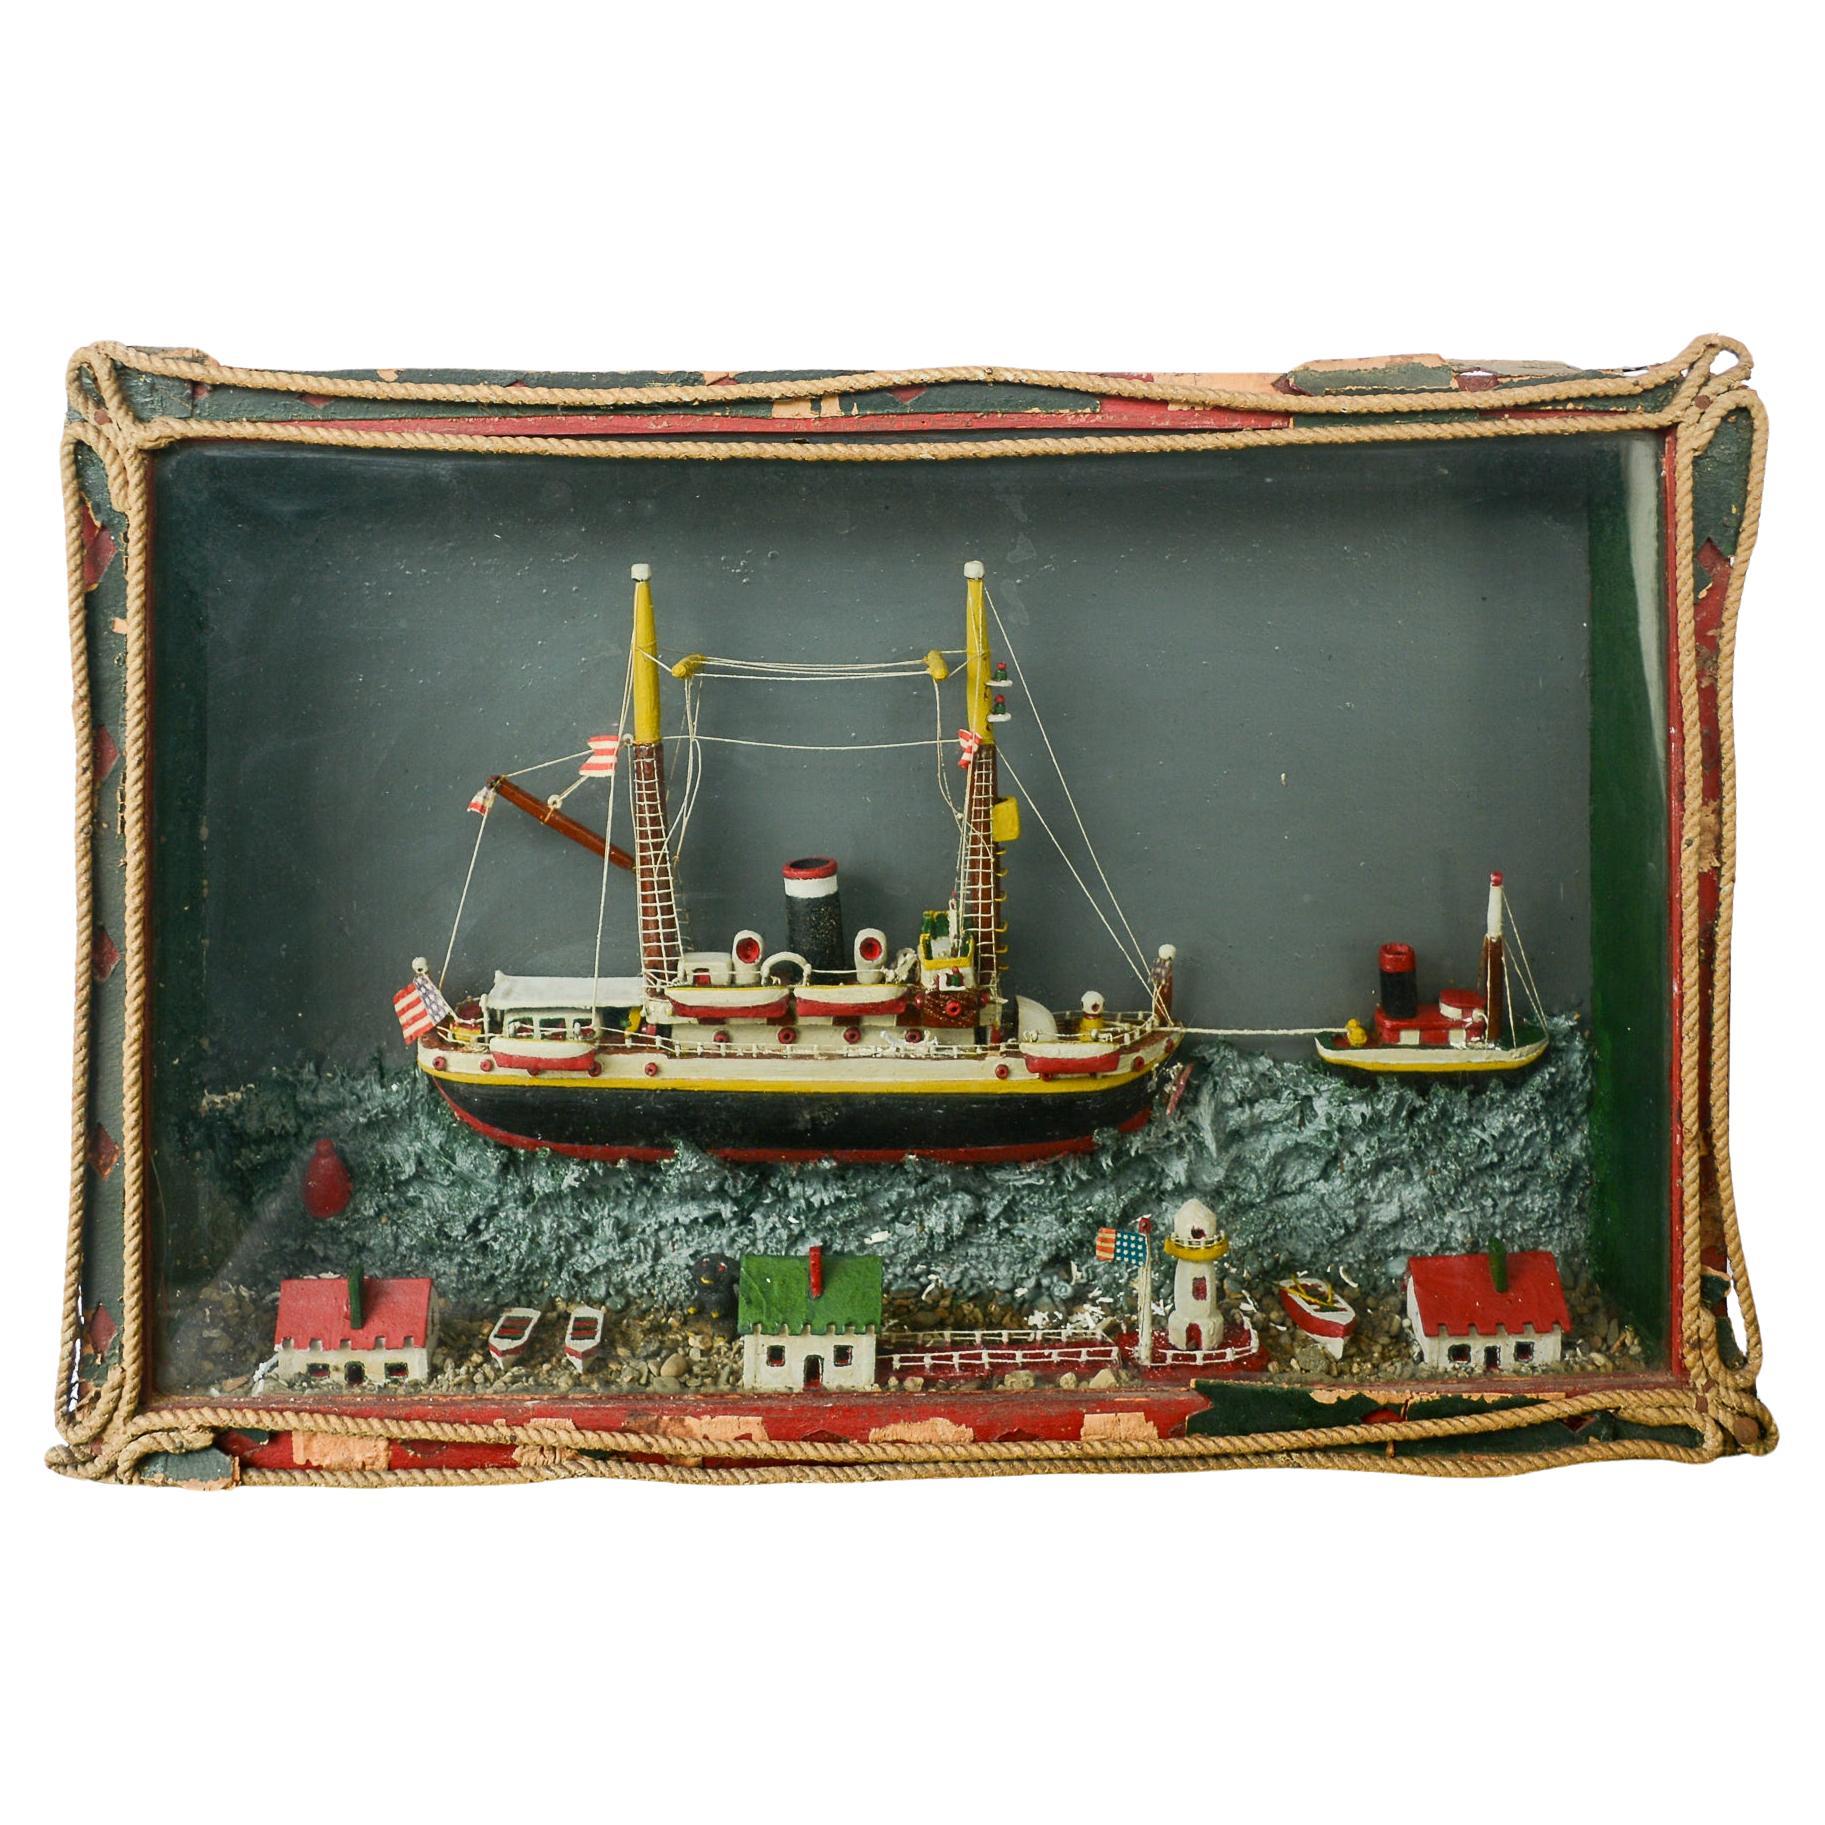 Diorama de bateau d'art populaire du début du 20e siècle